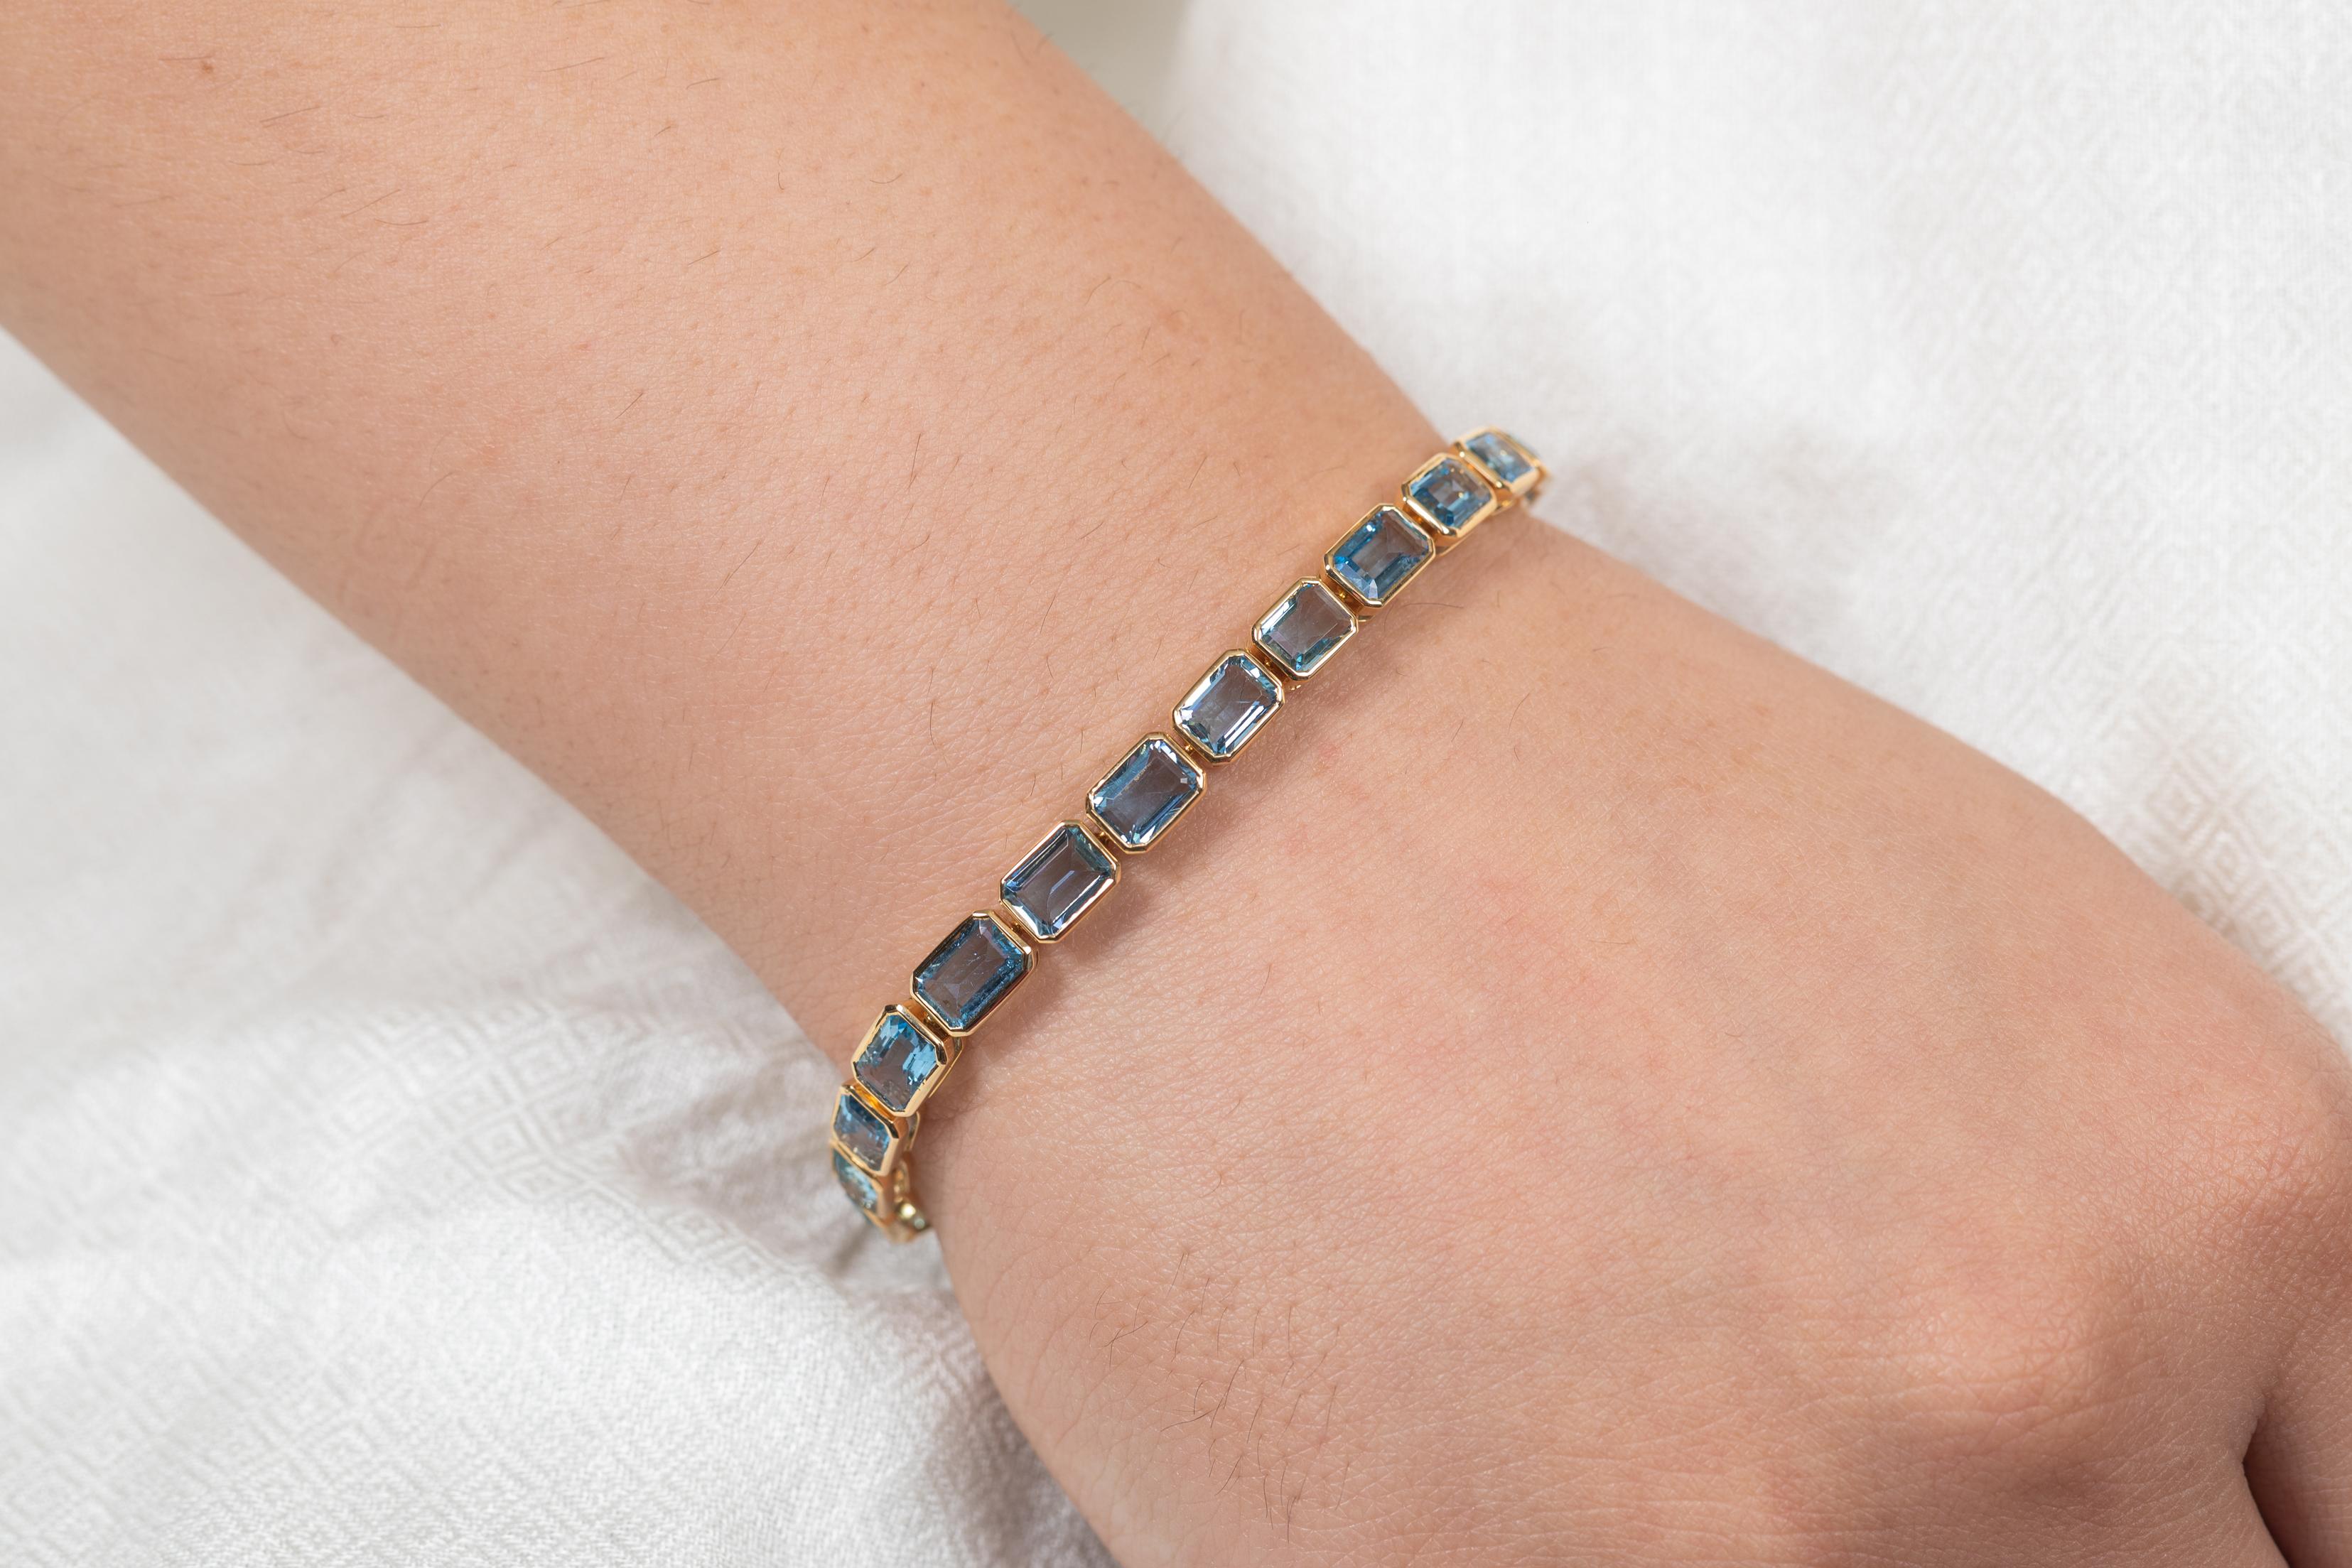 Bracelet d'aigue-marine en or 18 carats. Il est doté d'une pierre précieuse de taille octogonale parfaite qui vous permettra de vous démarquer en toute occasion ou lors d'un événement. 
Un bracelet de tennis est un bijou essentiel le jour de votre